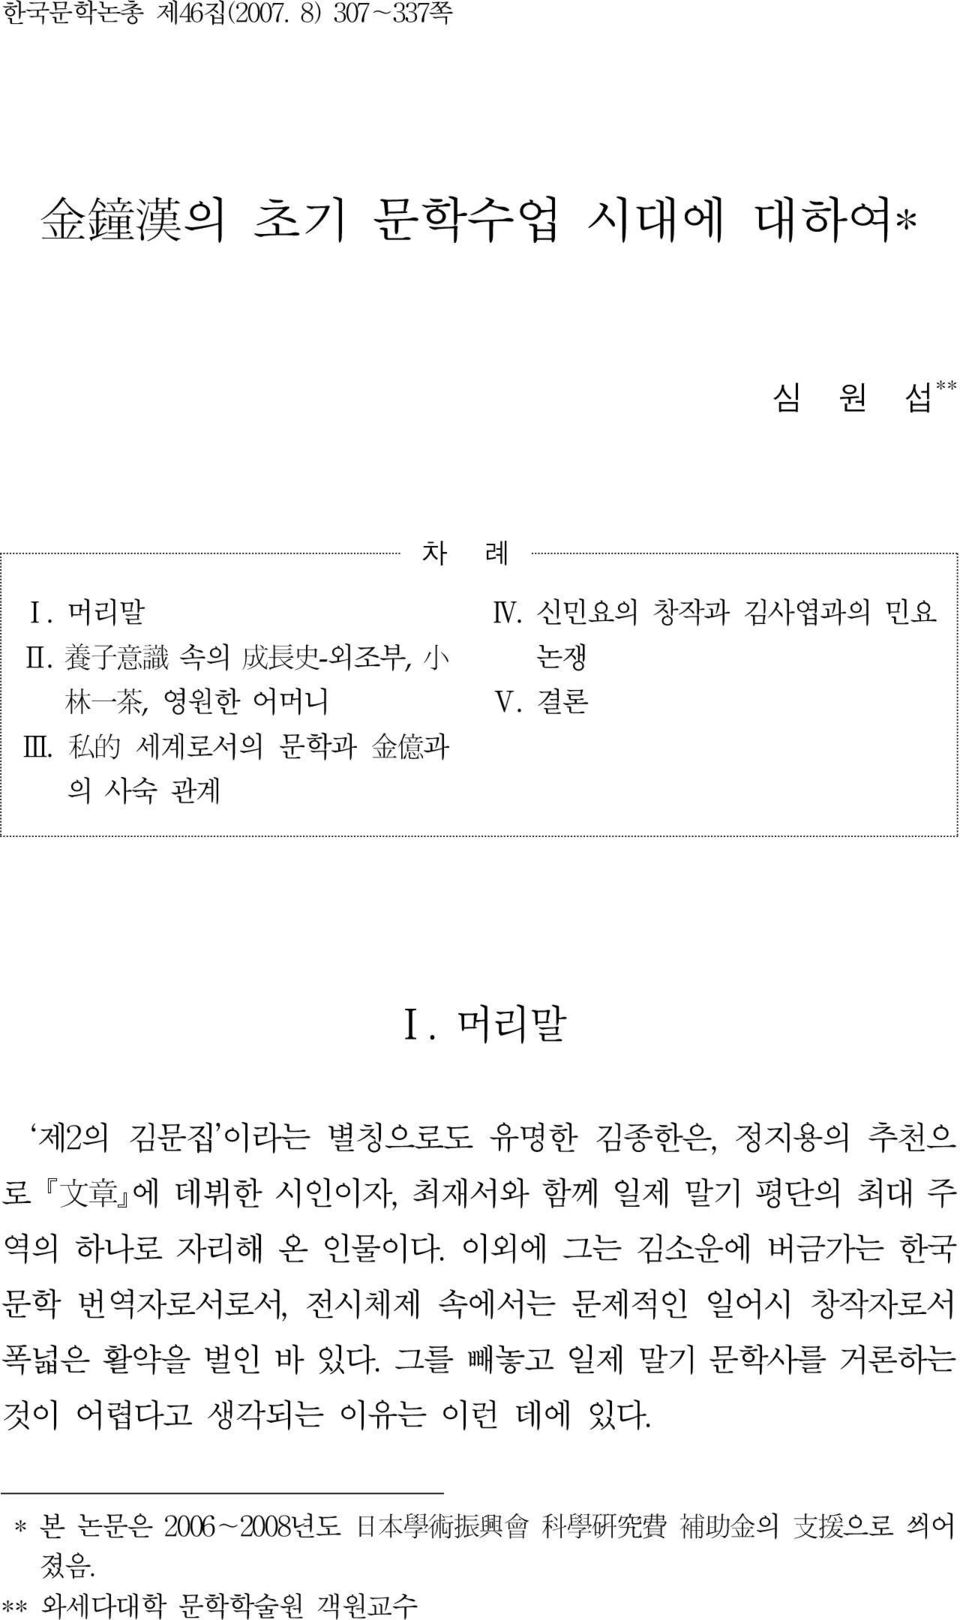 머리말 제2의 김문집 이라는 별칭으로도 유명한 김종한은, 정지용의 추천으 로 文 章 에 데뷔한 시인이자, 최재서와 함께 일제 말기 평단의 최대 주 역의 하나로 자리해 온 인물이다.